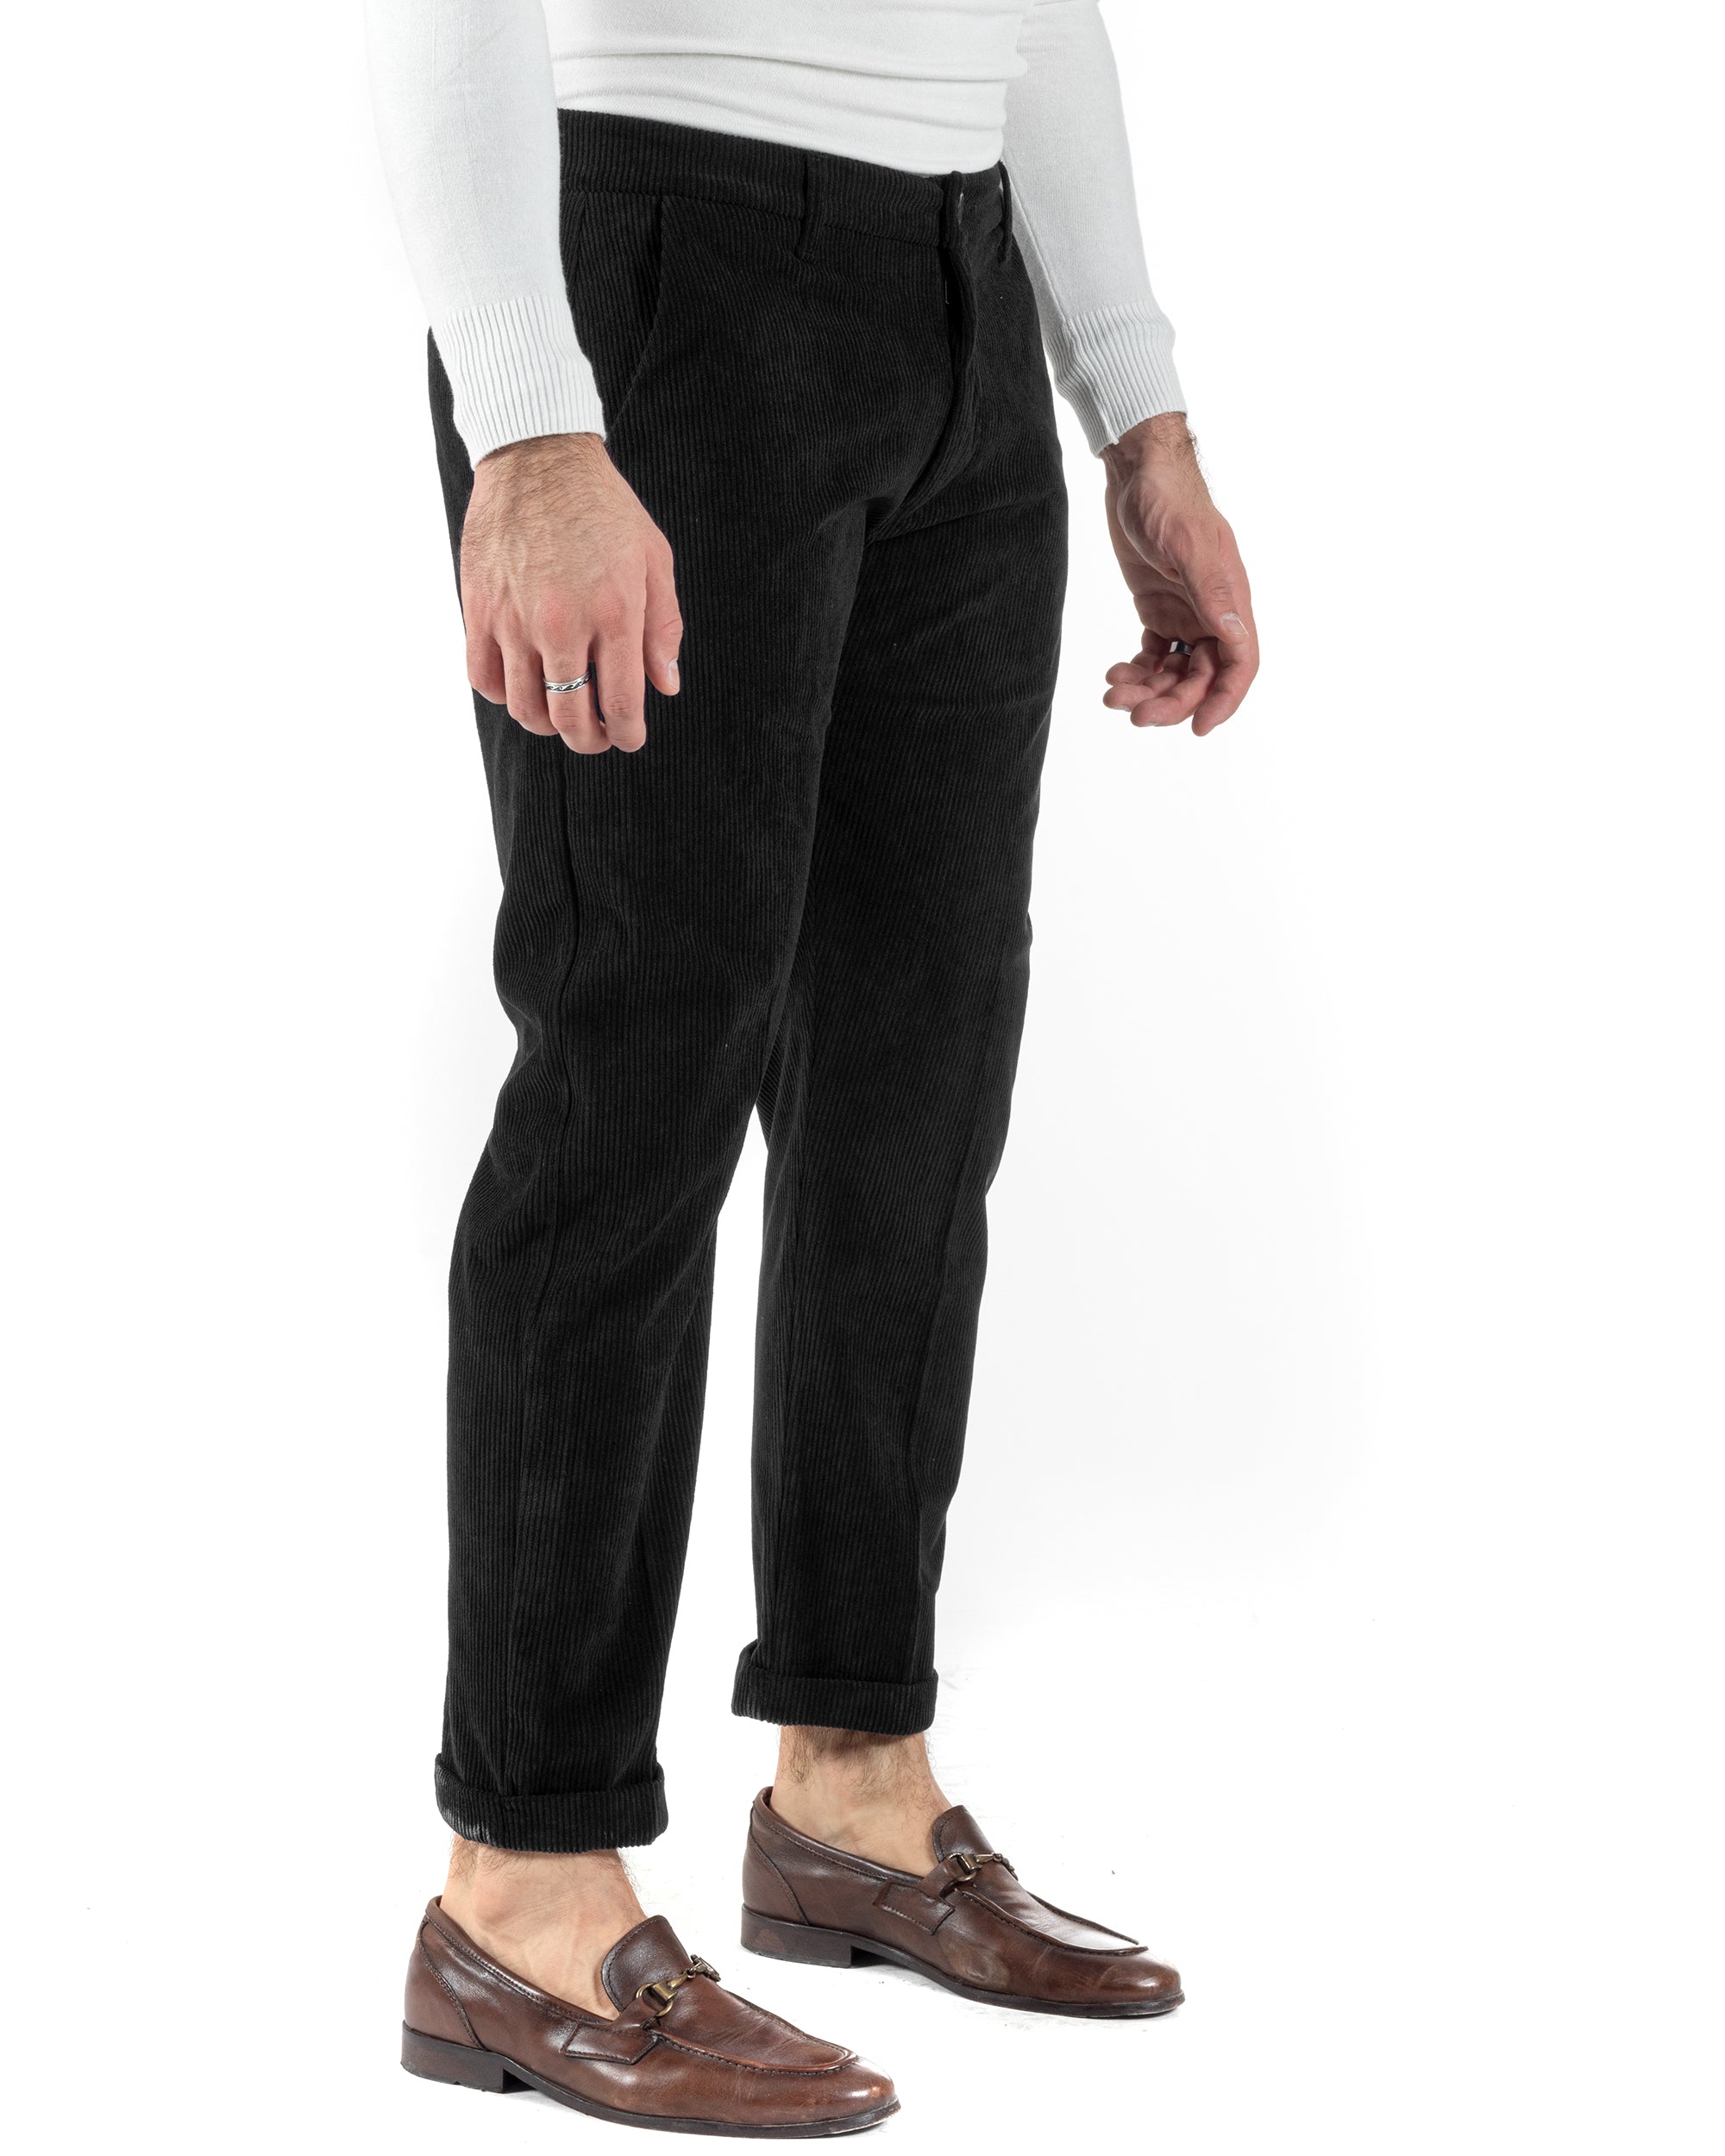 Pantaloni Uomo Tasca America Classico Velluto Costine Nero Casual GIOSAL-P6004A